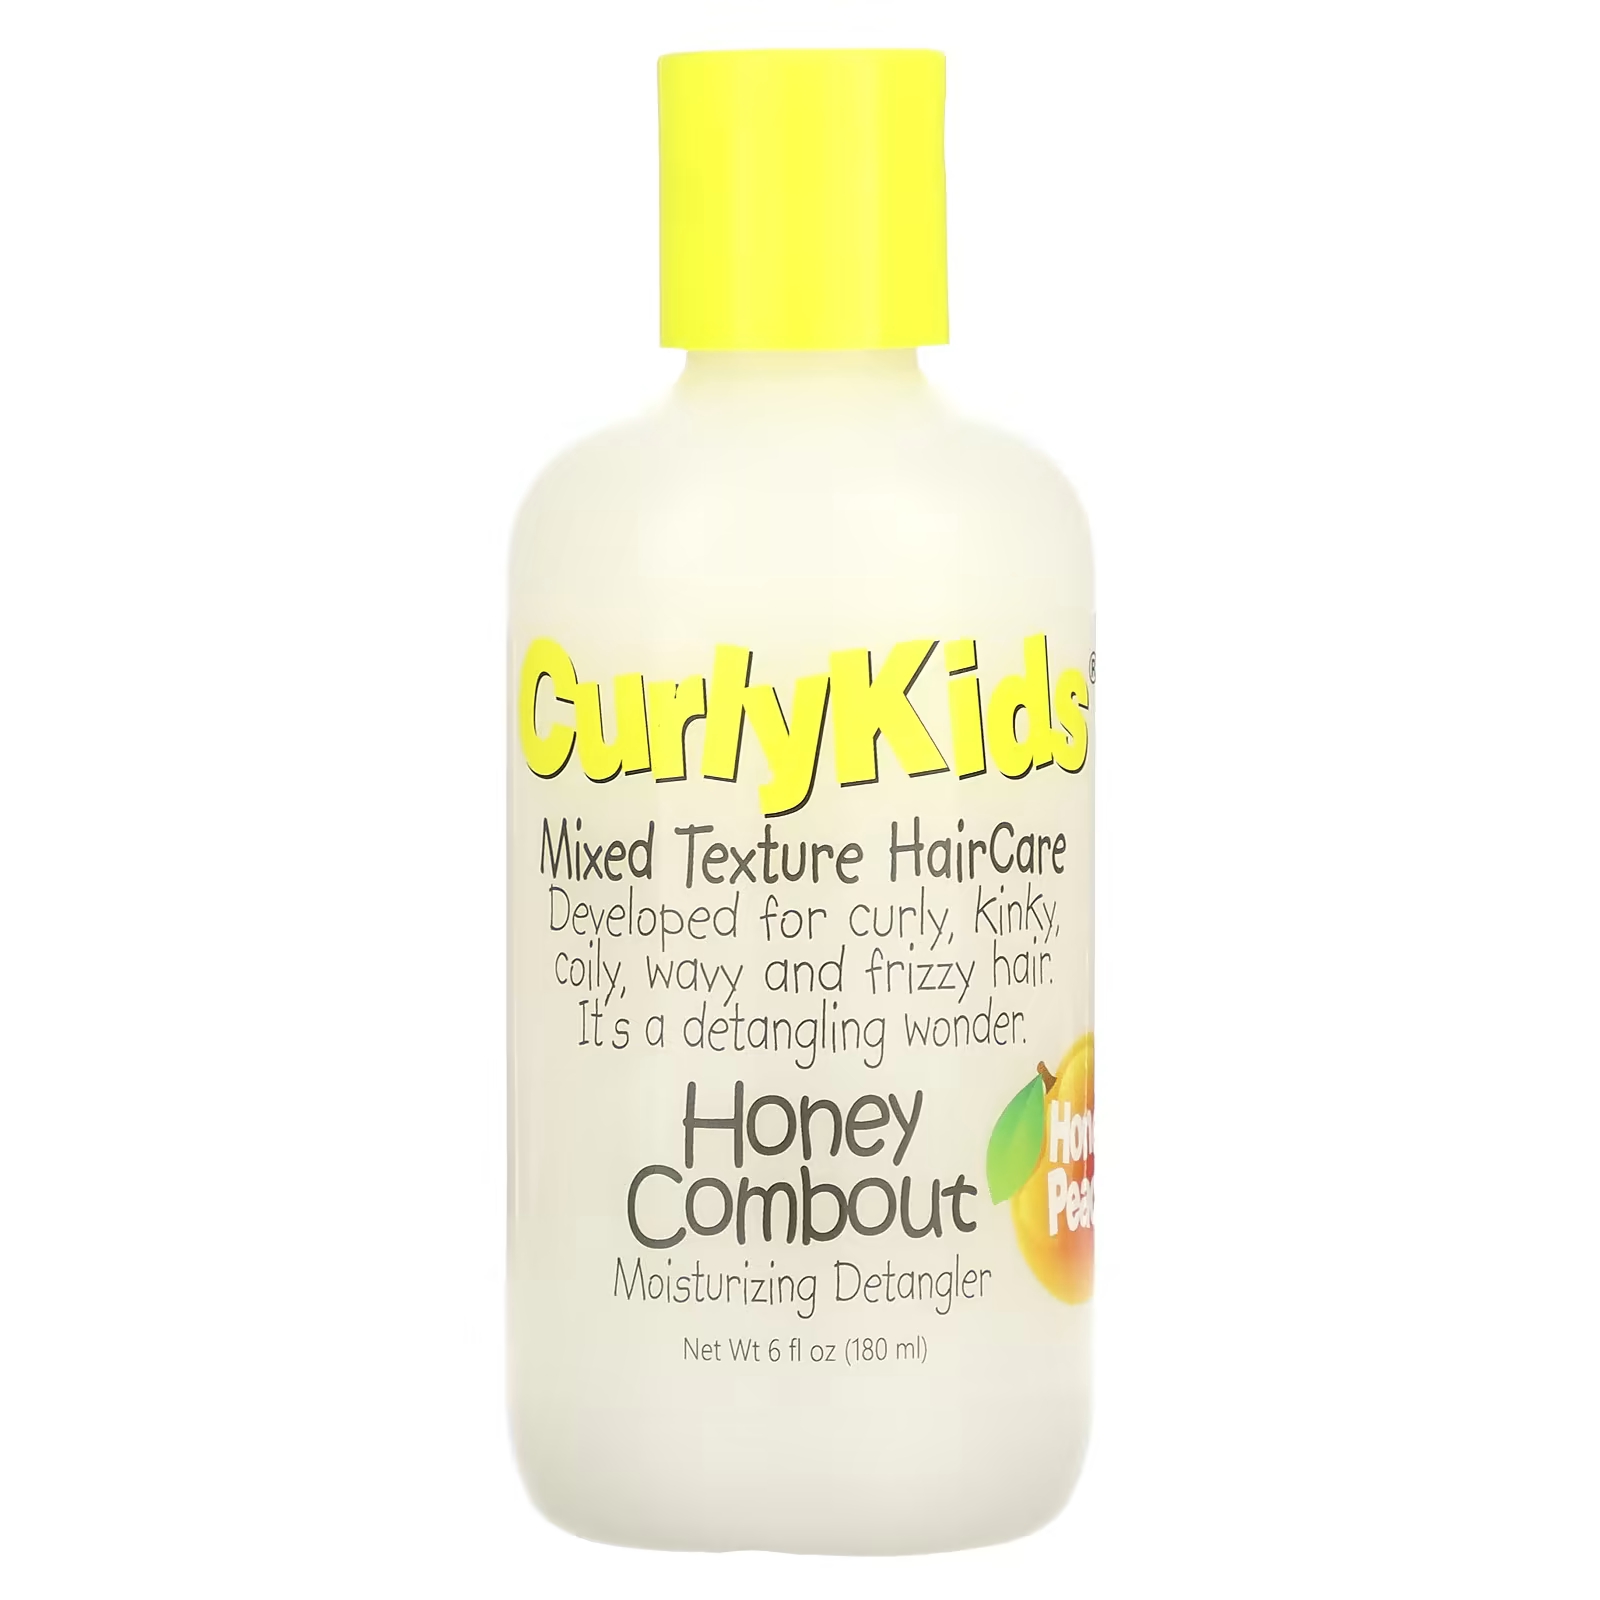 CurlyKids Honey Combout Увлажняющее средство для расчесывания волос Honey Peach, 6 жидких унций (180 мл)